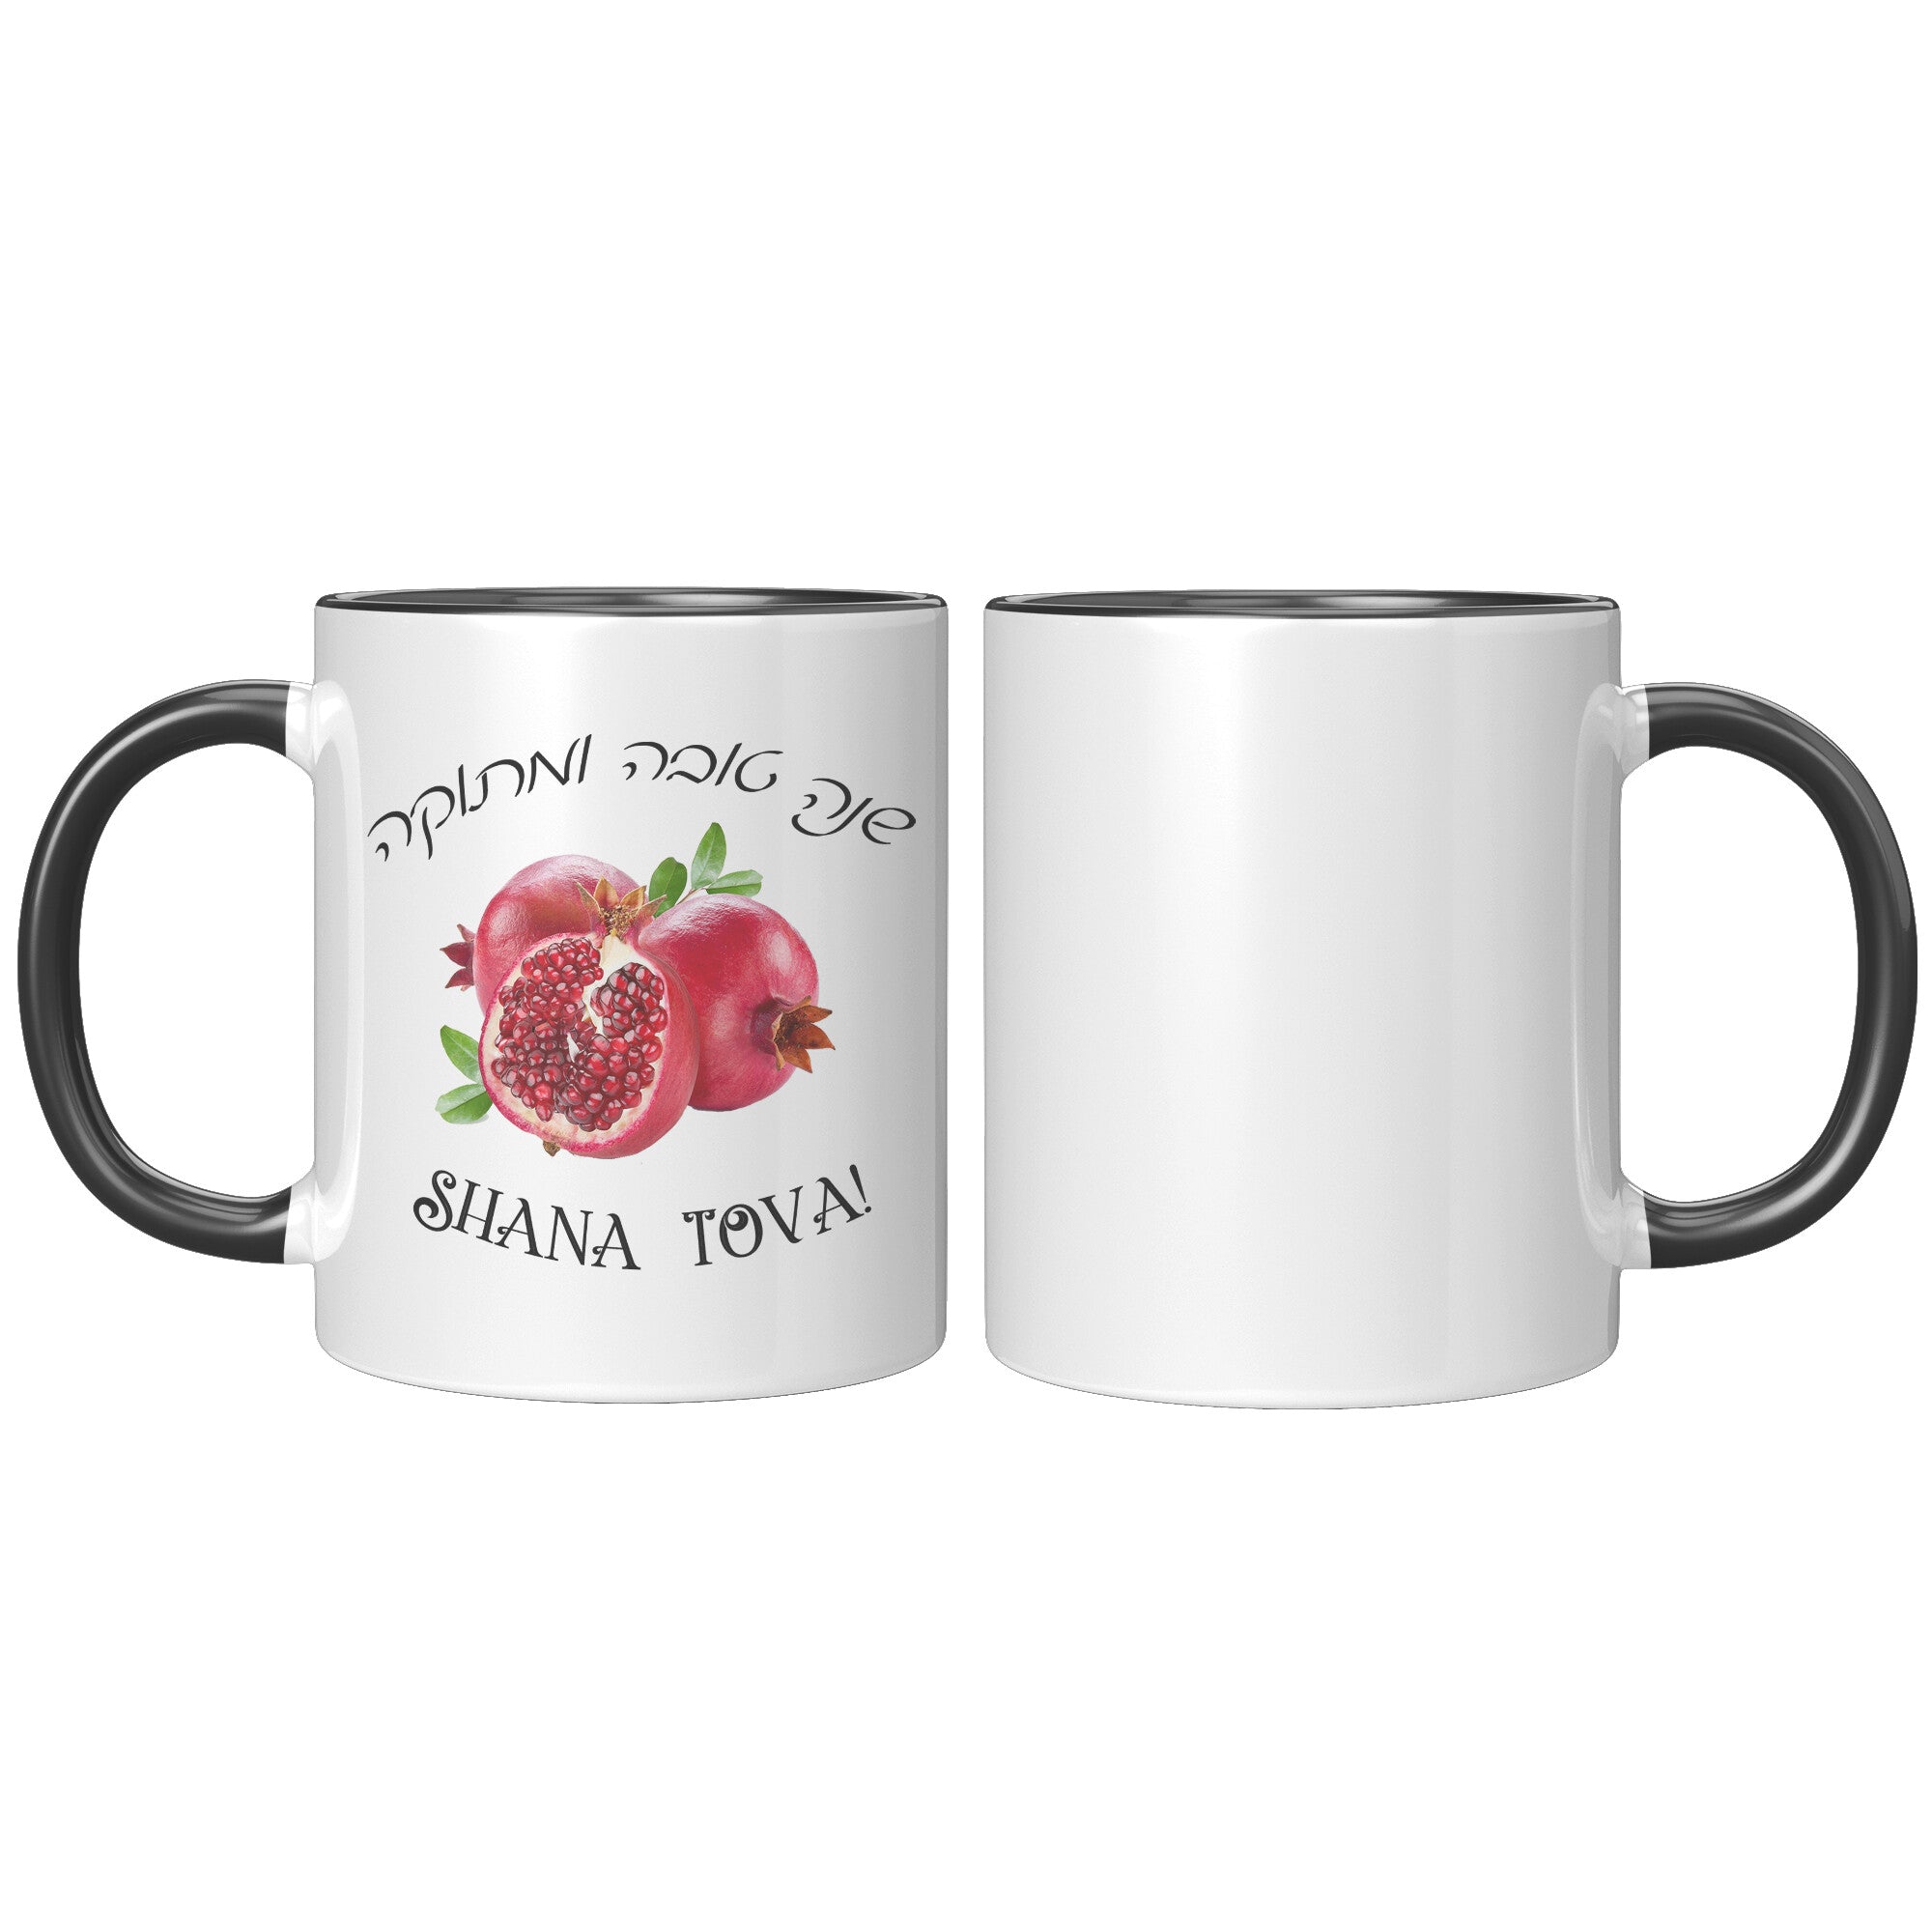 Shana Tova Rosh Hashana Gift Mug